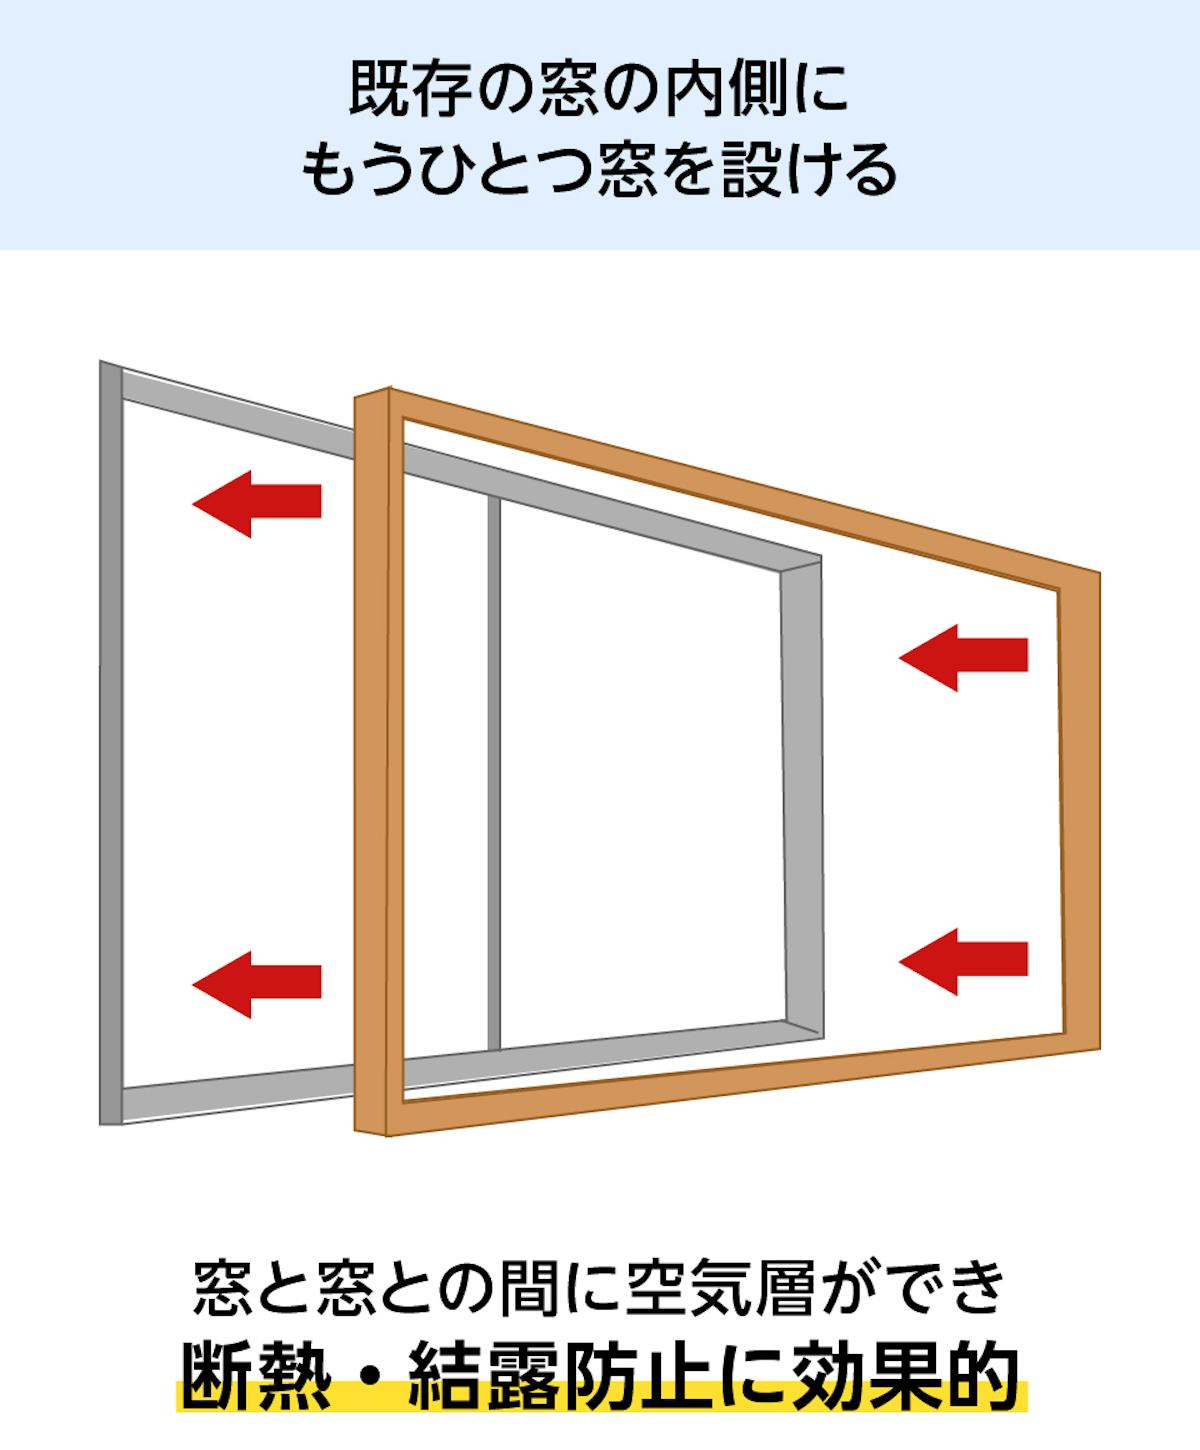 既存の窓にLIXILの内窓「インプラス 引き違い窓(2枚建て)」を付けると、断熱効果や結露防止がある